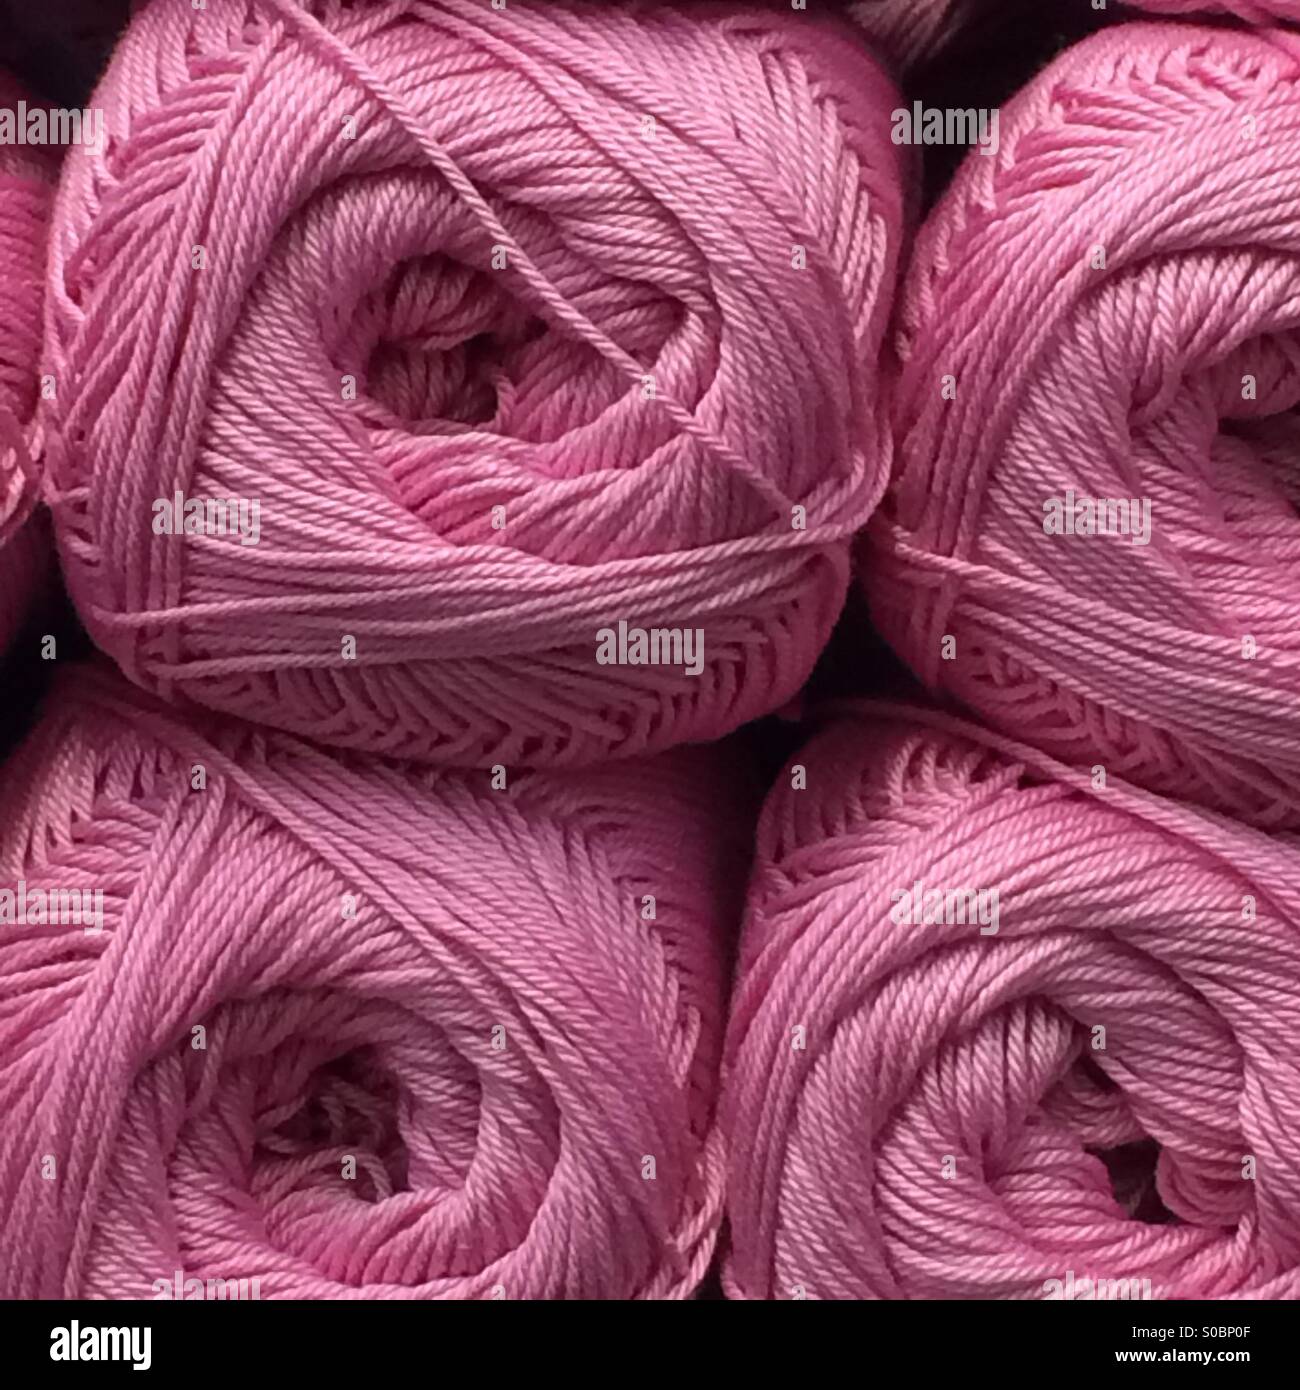 Boules de laine empilés sur des étagères Banque D'Images